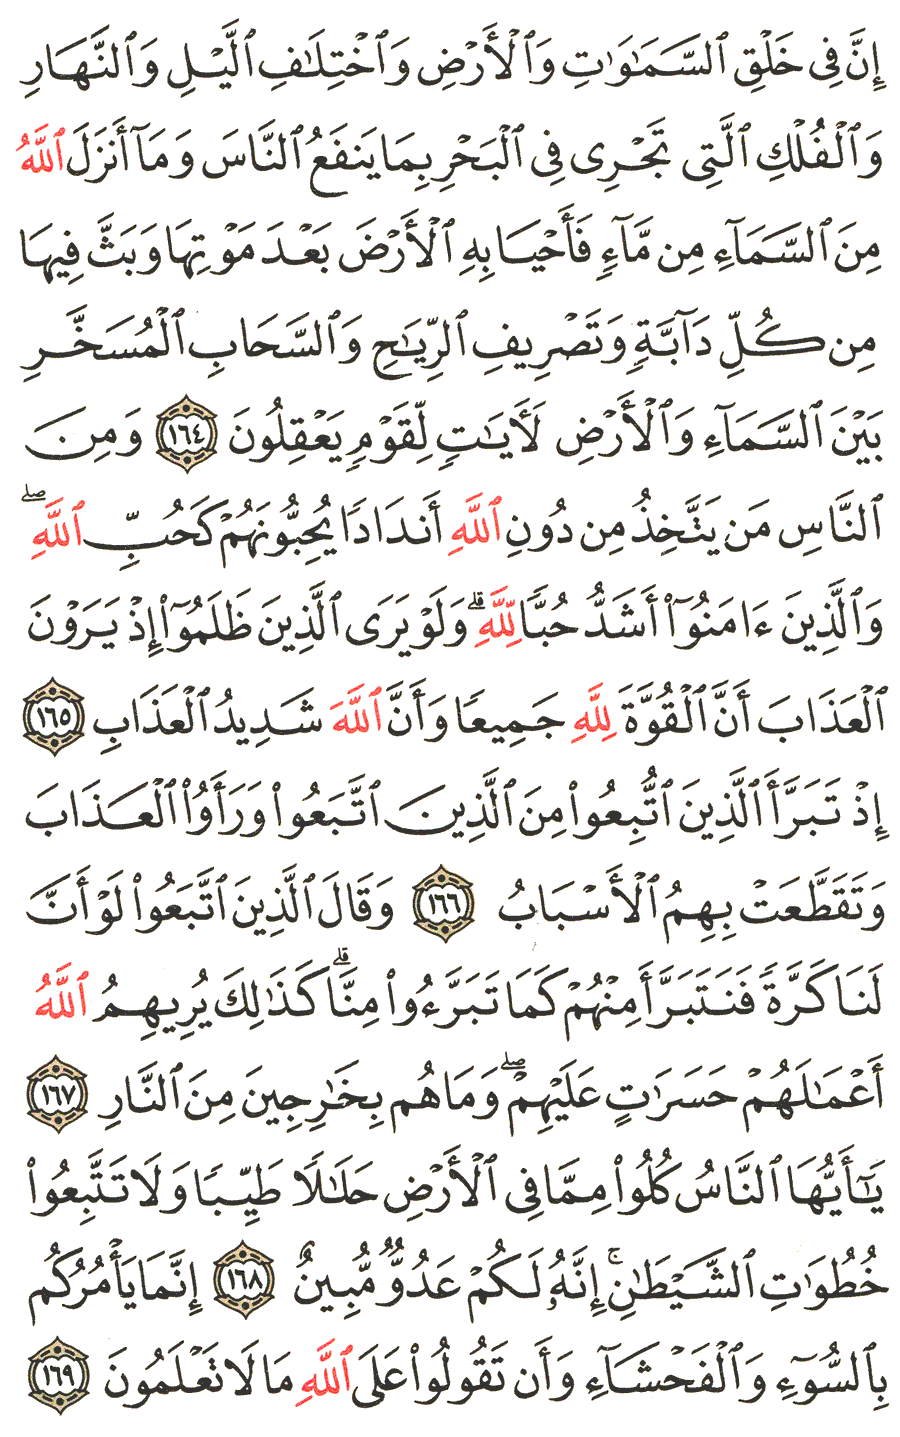 الصفحة رقم  25 من القرآن الكريم مكتوبة من المصحف